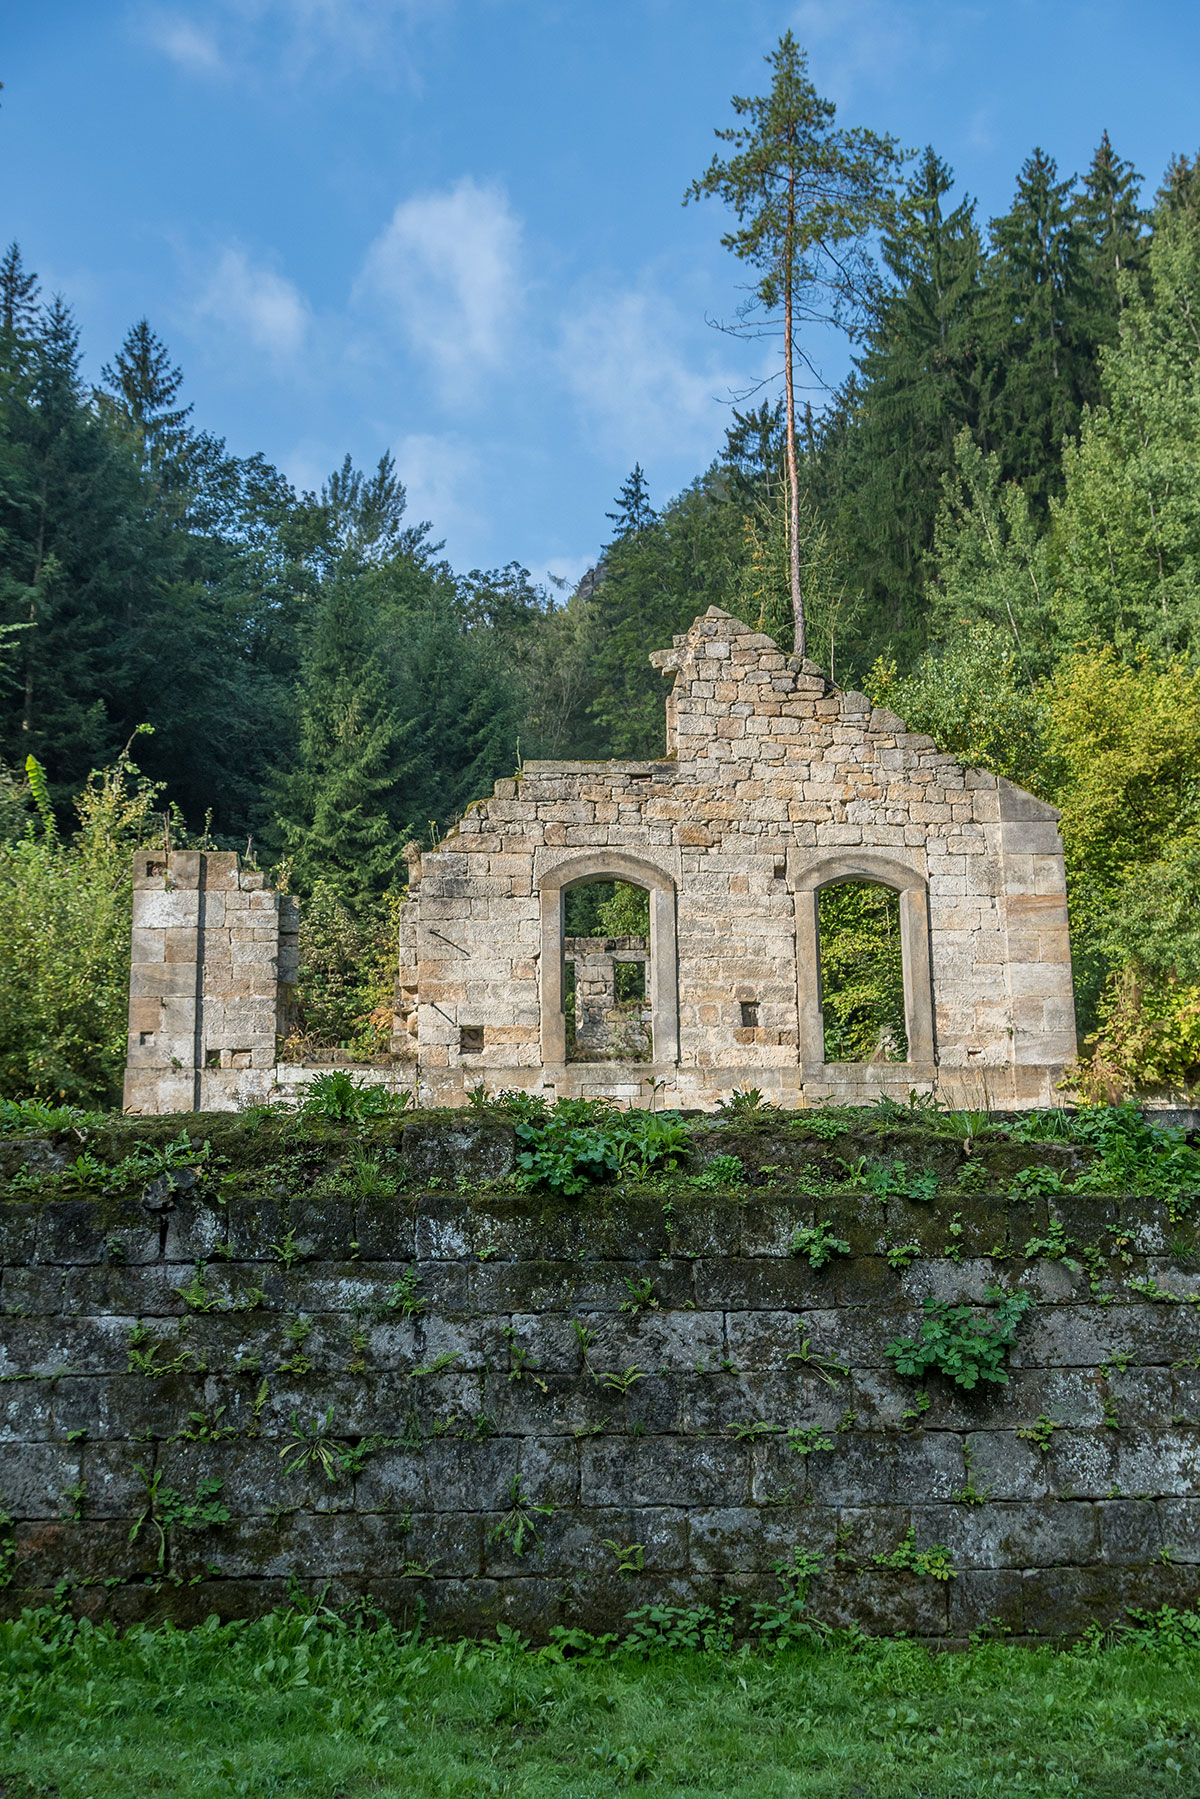 Labské Údolí near Děčín, ruin